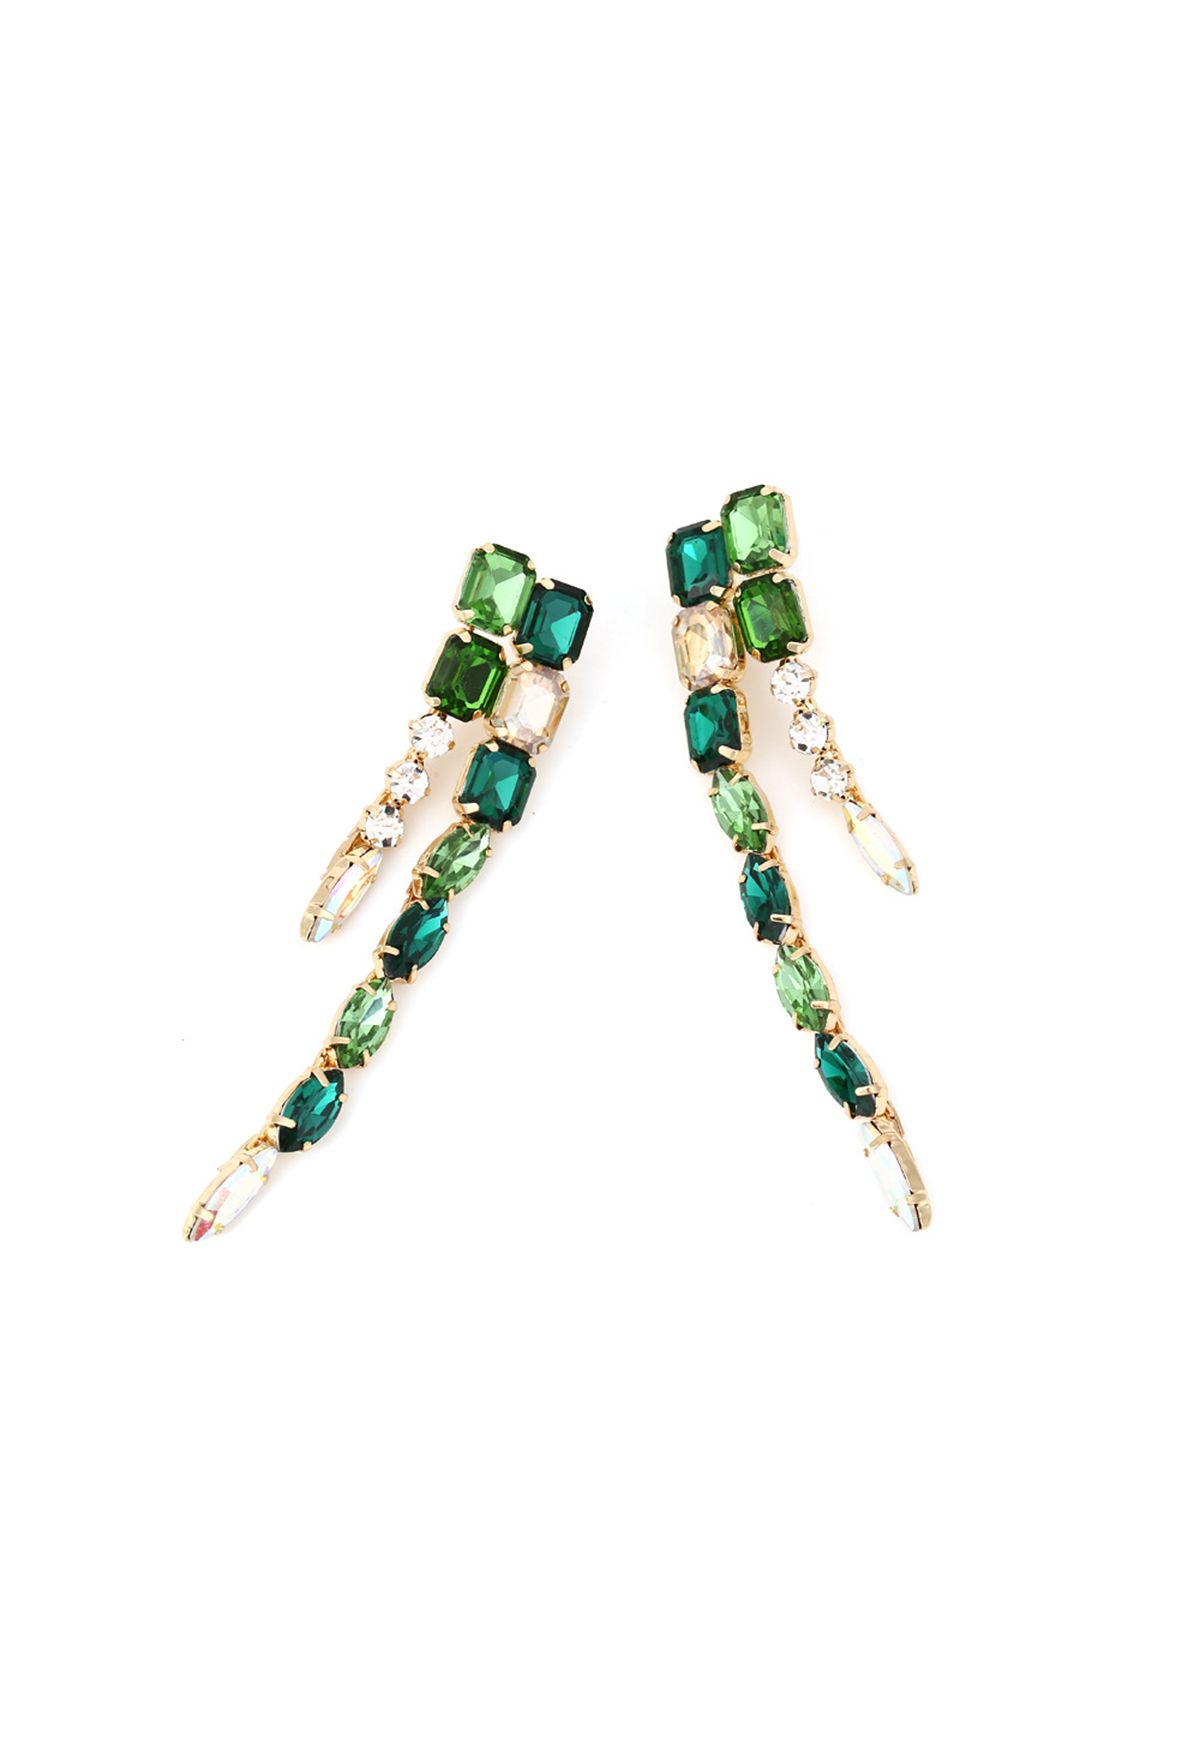 Lange Ohrringe mit Smaragd-Edelsteinen verbinden